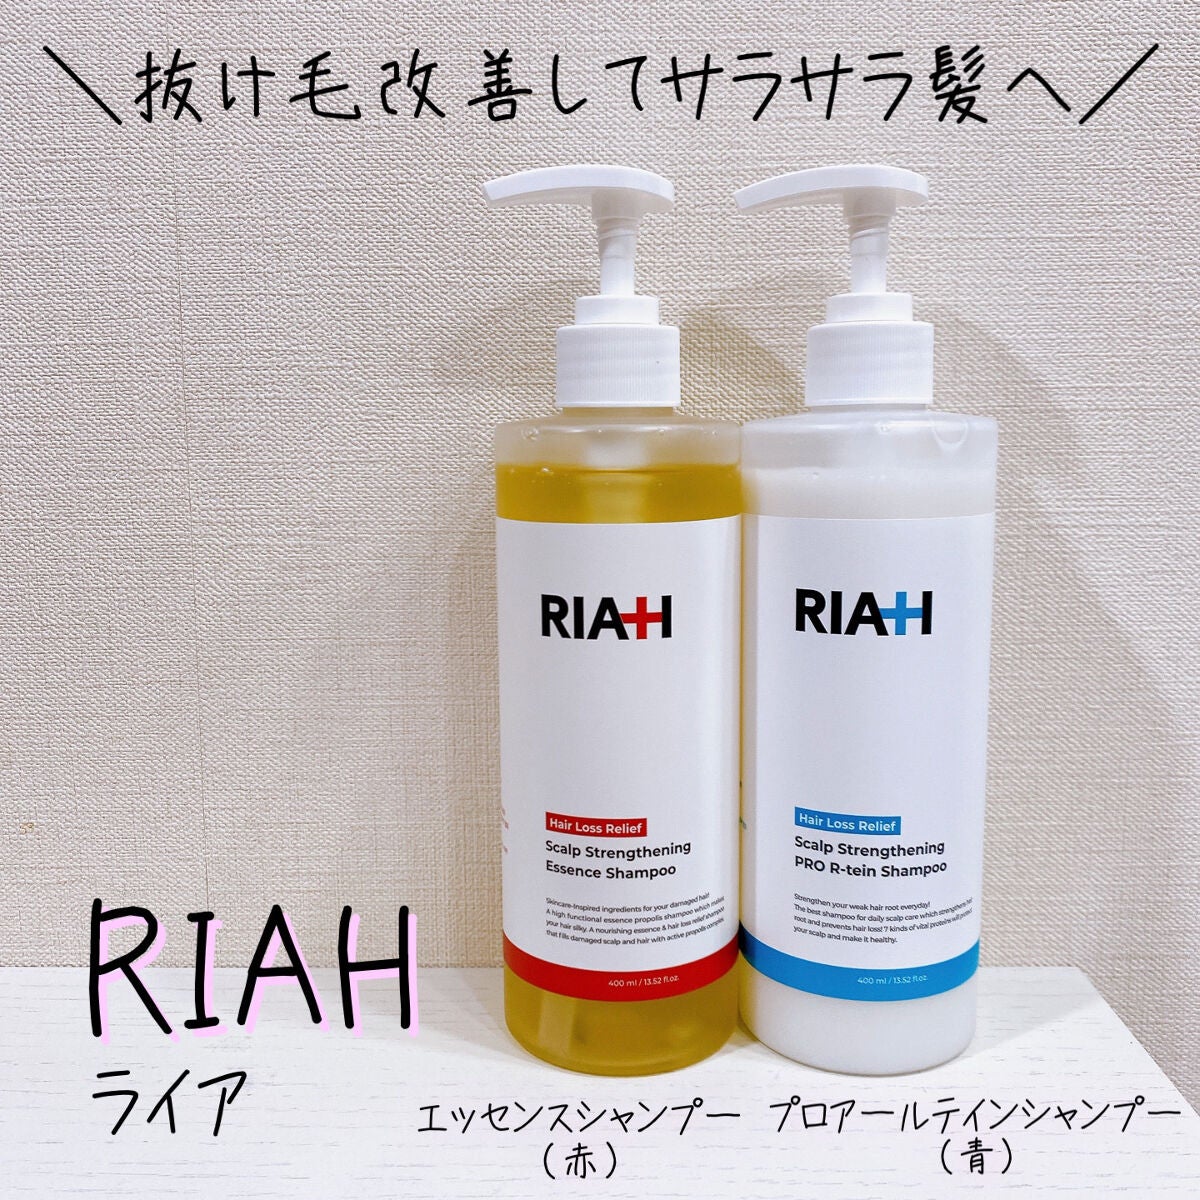 試してみた】ライア(RIAH) エッセンスシャンプー / RIAHの効果・髪質別 